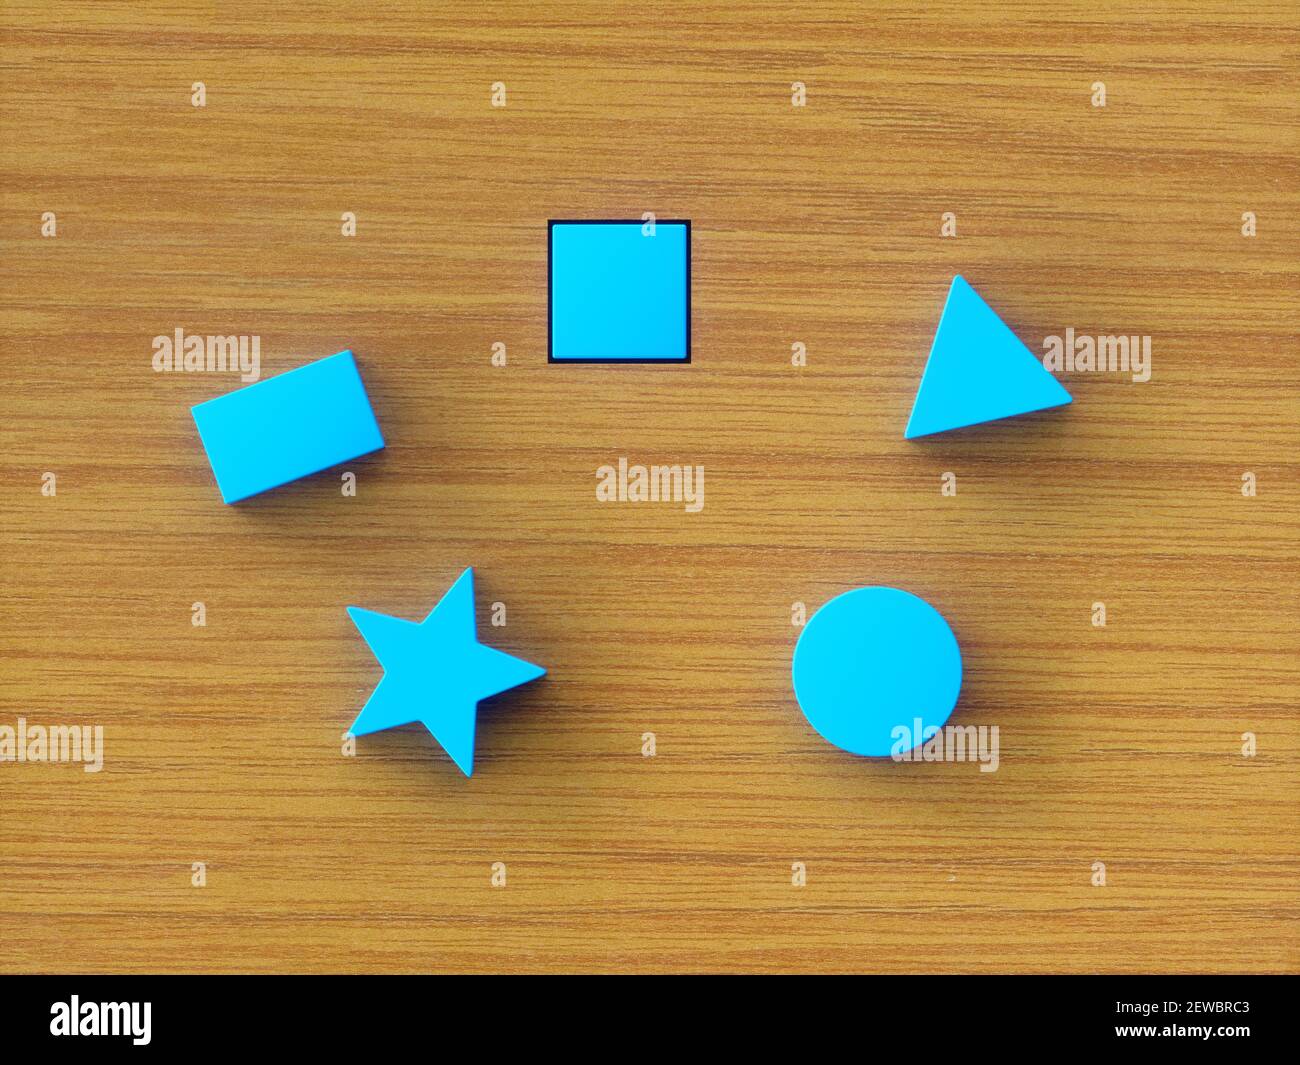 Blocs de construction bleus assortis sur une table en bois. Image conceptuelle du jouet éducatif et test psychologique. Banque D'Images